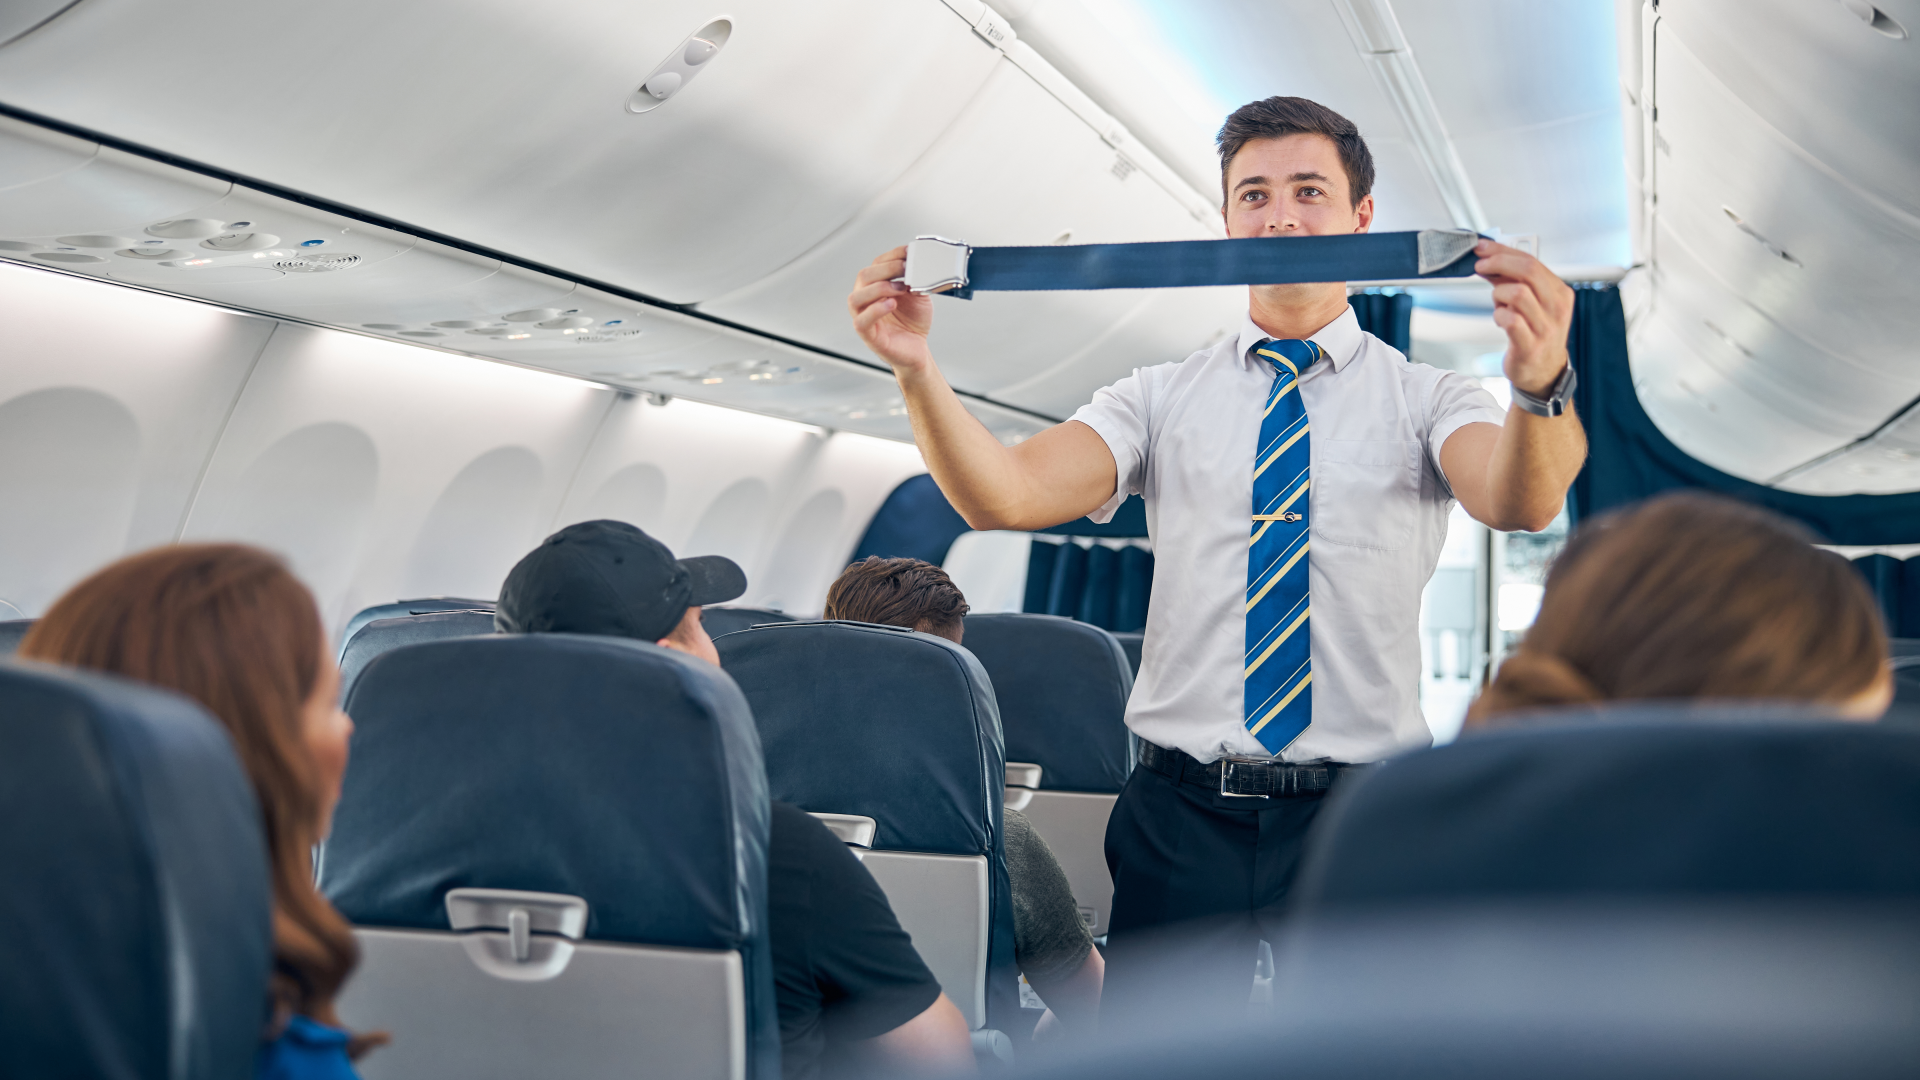 Cấm sử dụng tai nghe trên máy bay: Biện pháp an toàn hay phiền toái? - 2